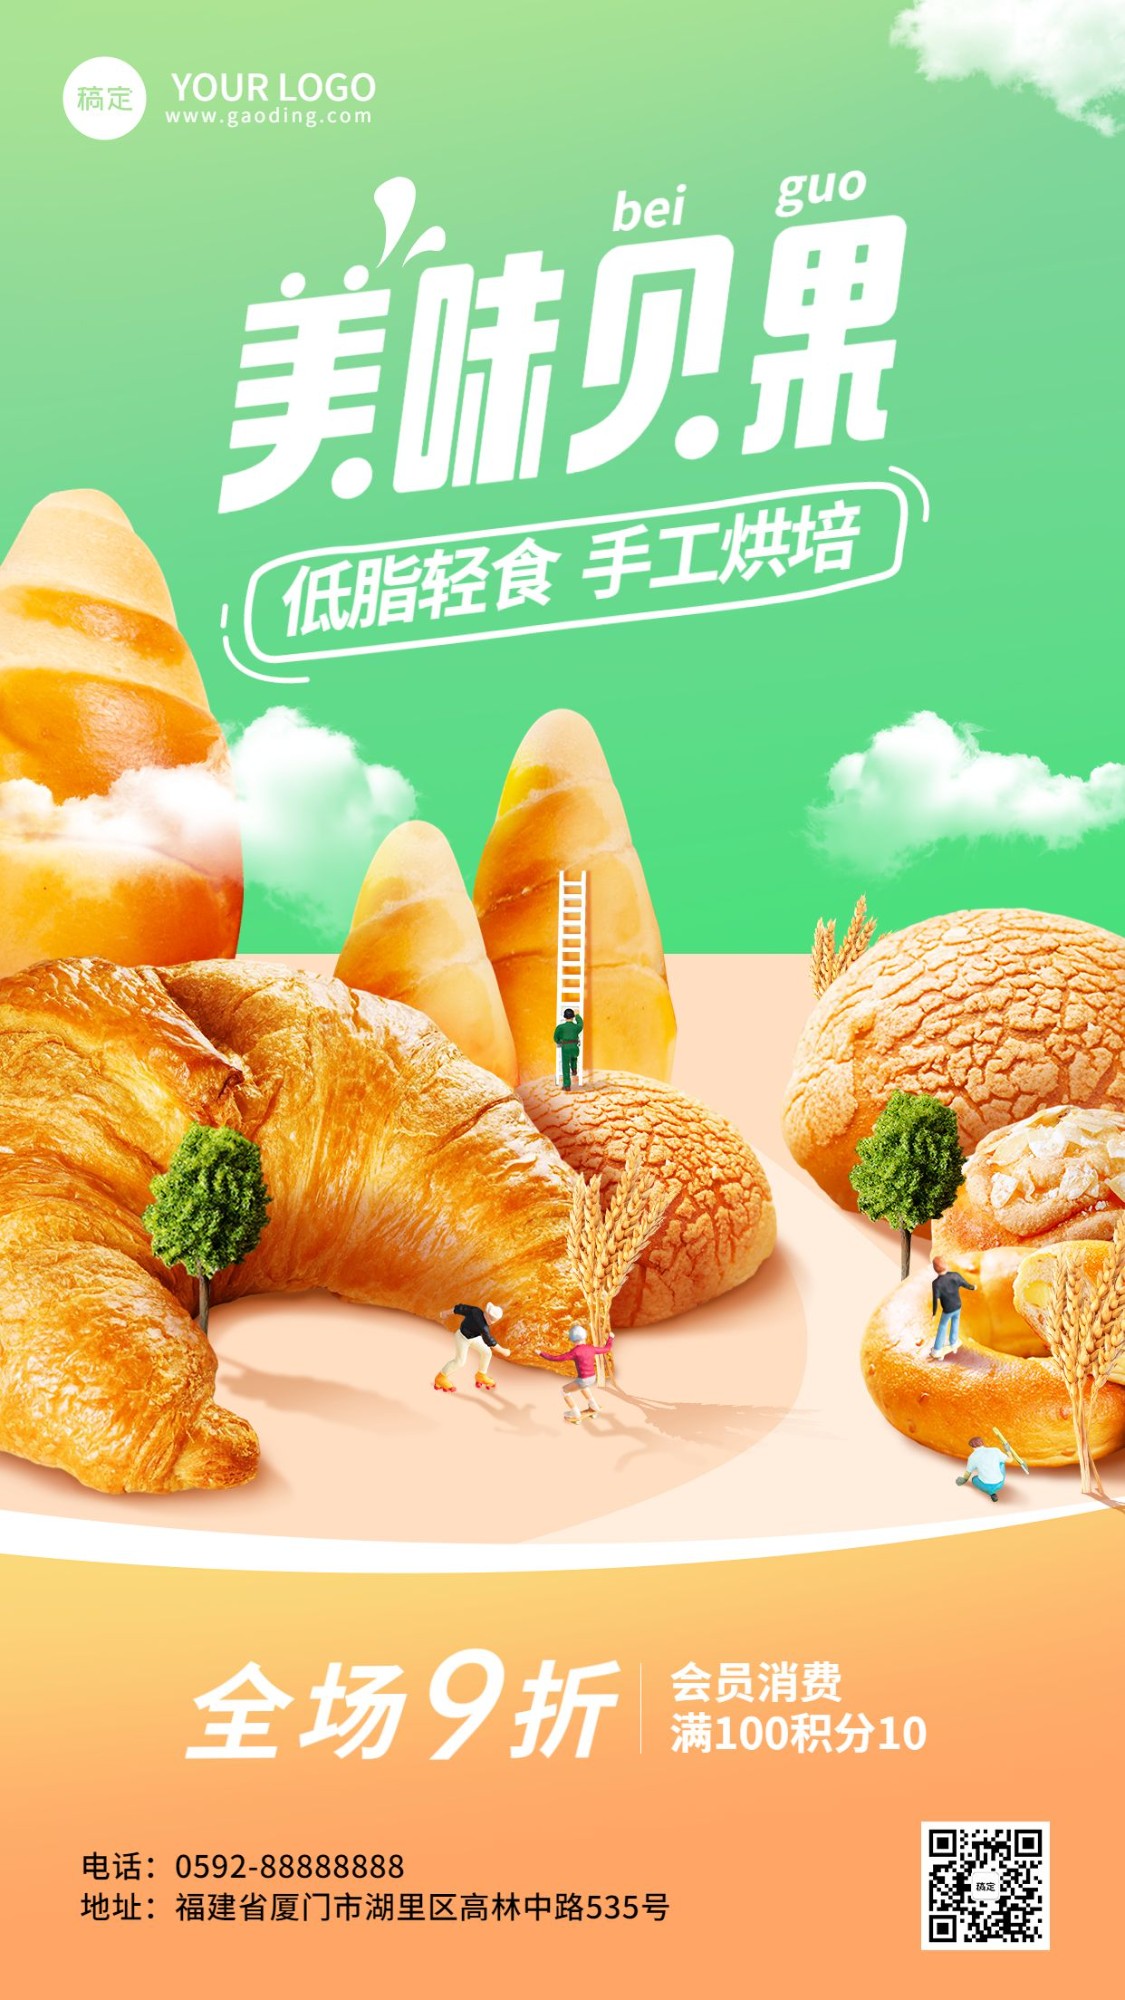 餐饮烘焙面包产品营销手机海报预览效果